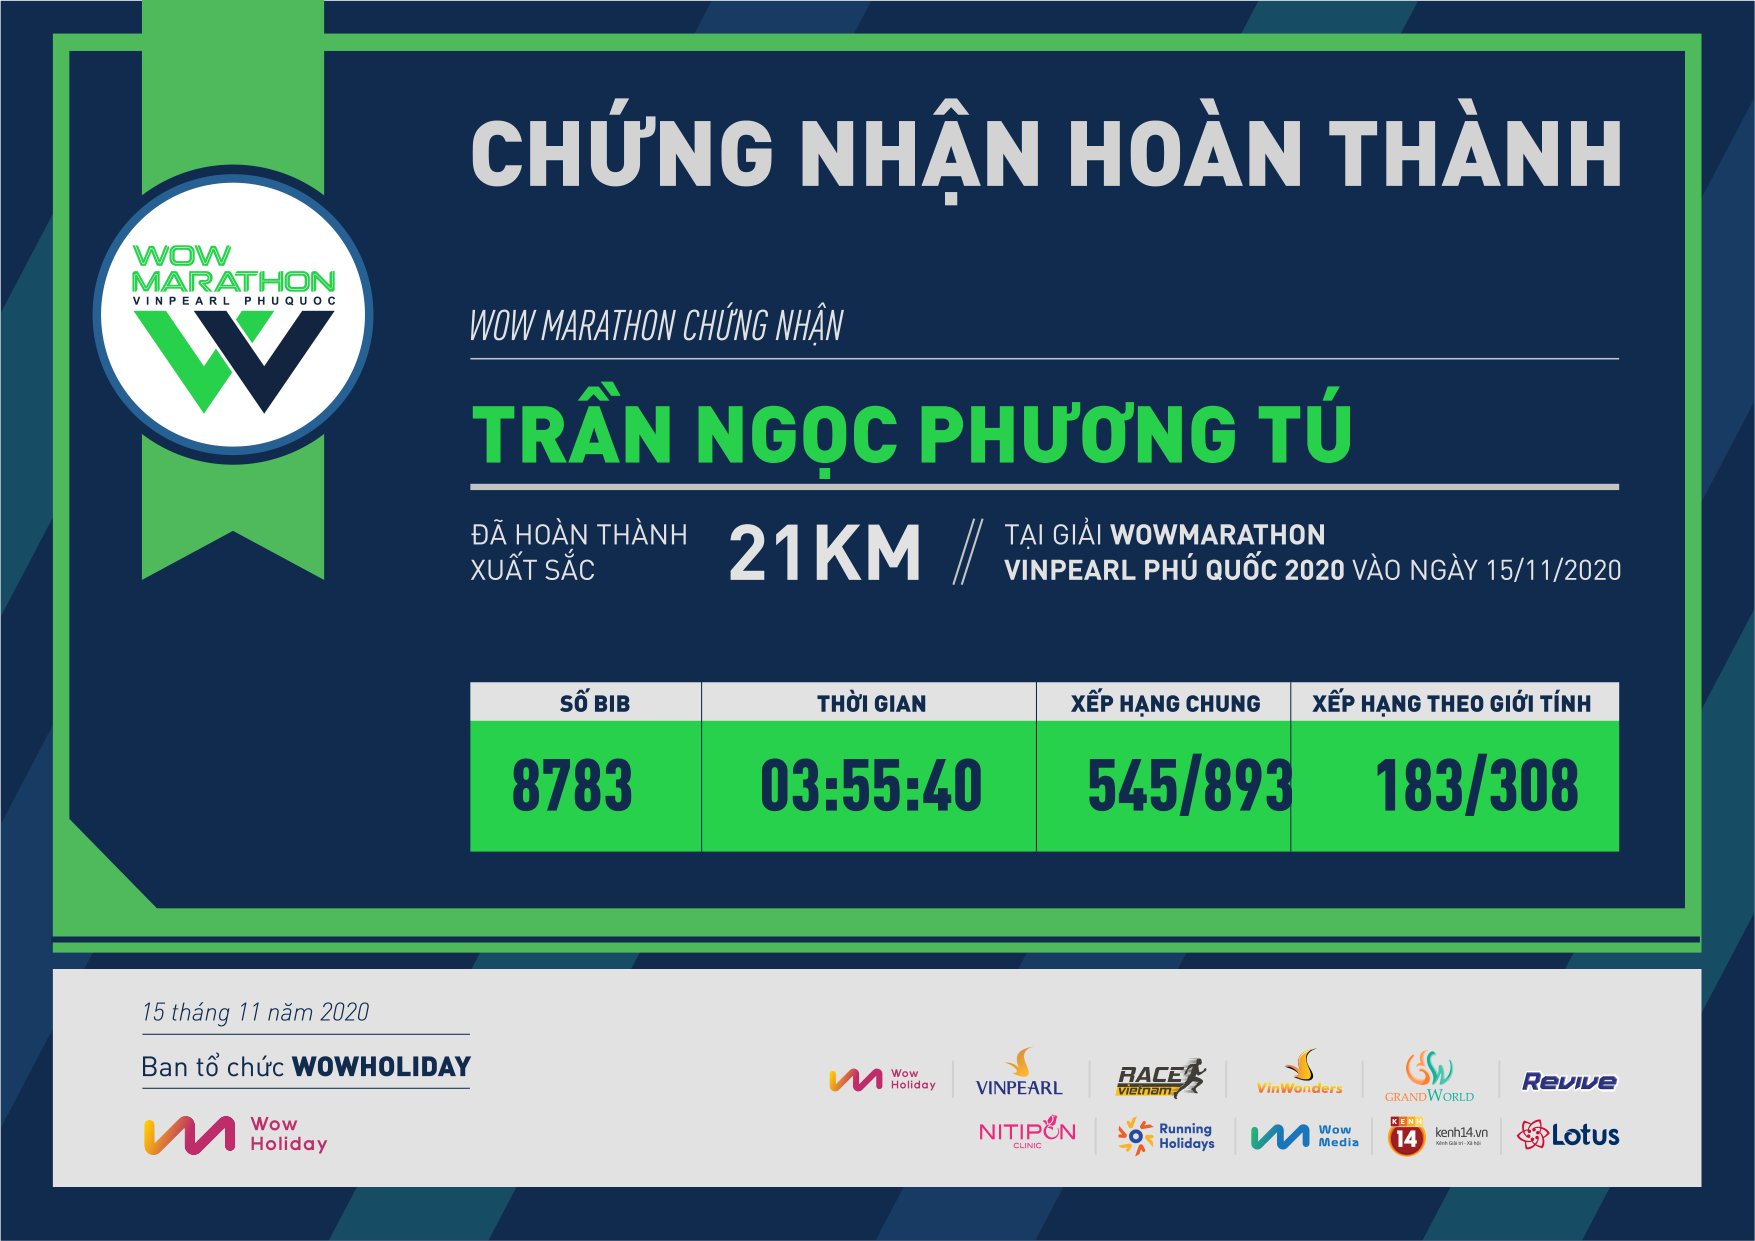 8783 - Trần Ngọc Phương Tú